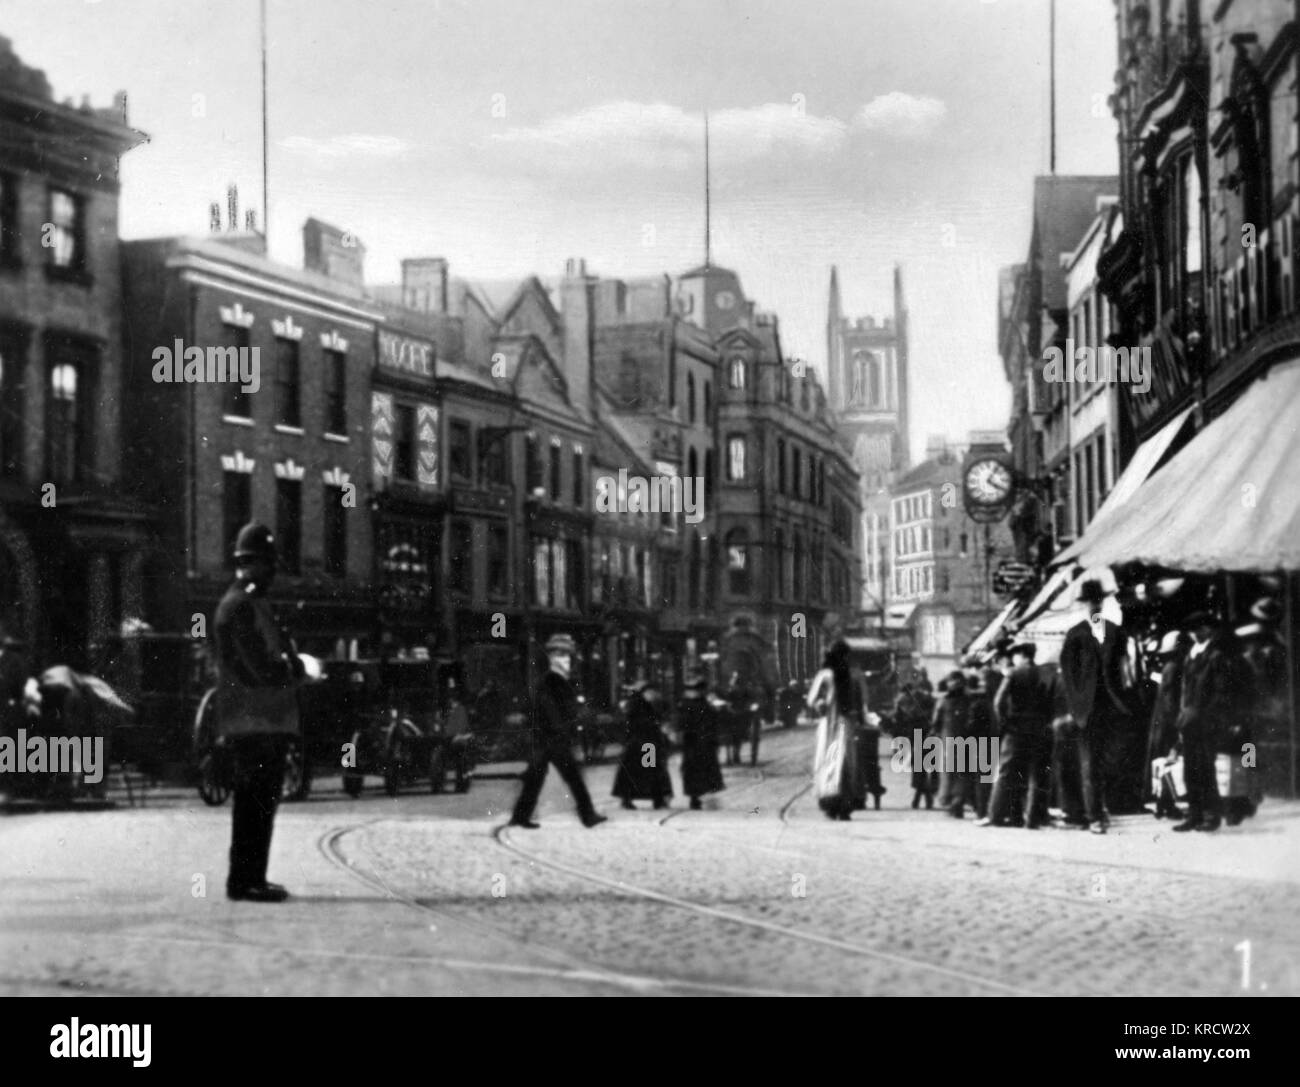 Vue sur le Cornmarket dans le centre-ville, Derby -- c'est l'une des rues principales, du nom d'un véritable marché du maïs qui y a eu lieu. Date : vers 1910 Banque D'Images